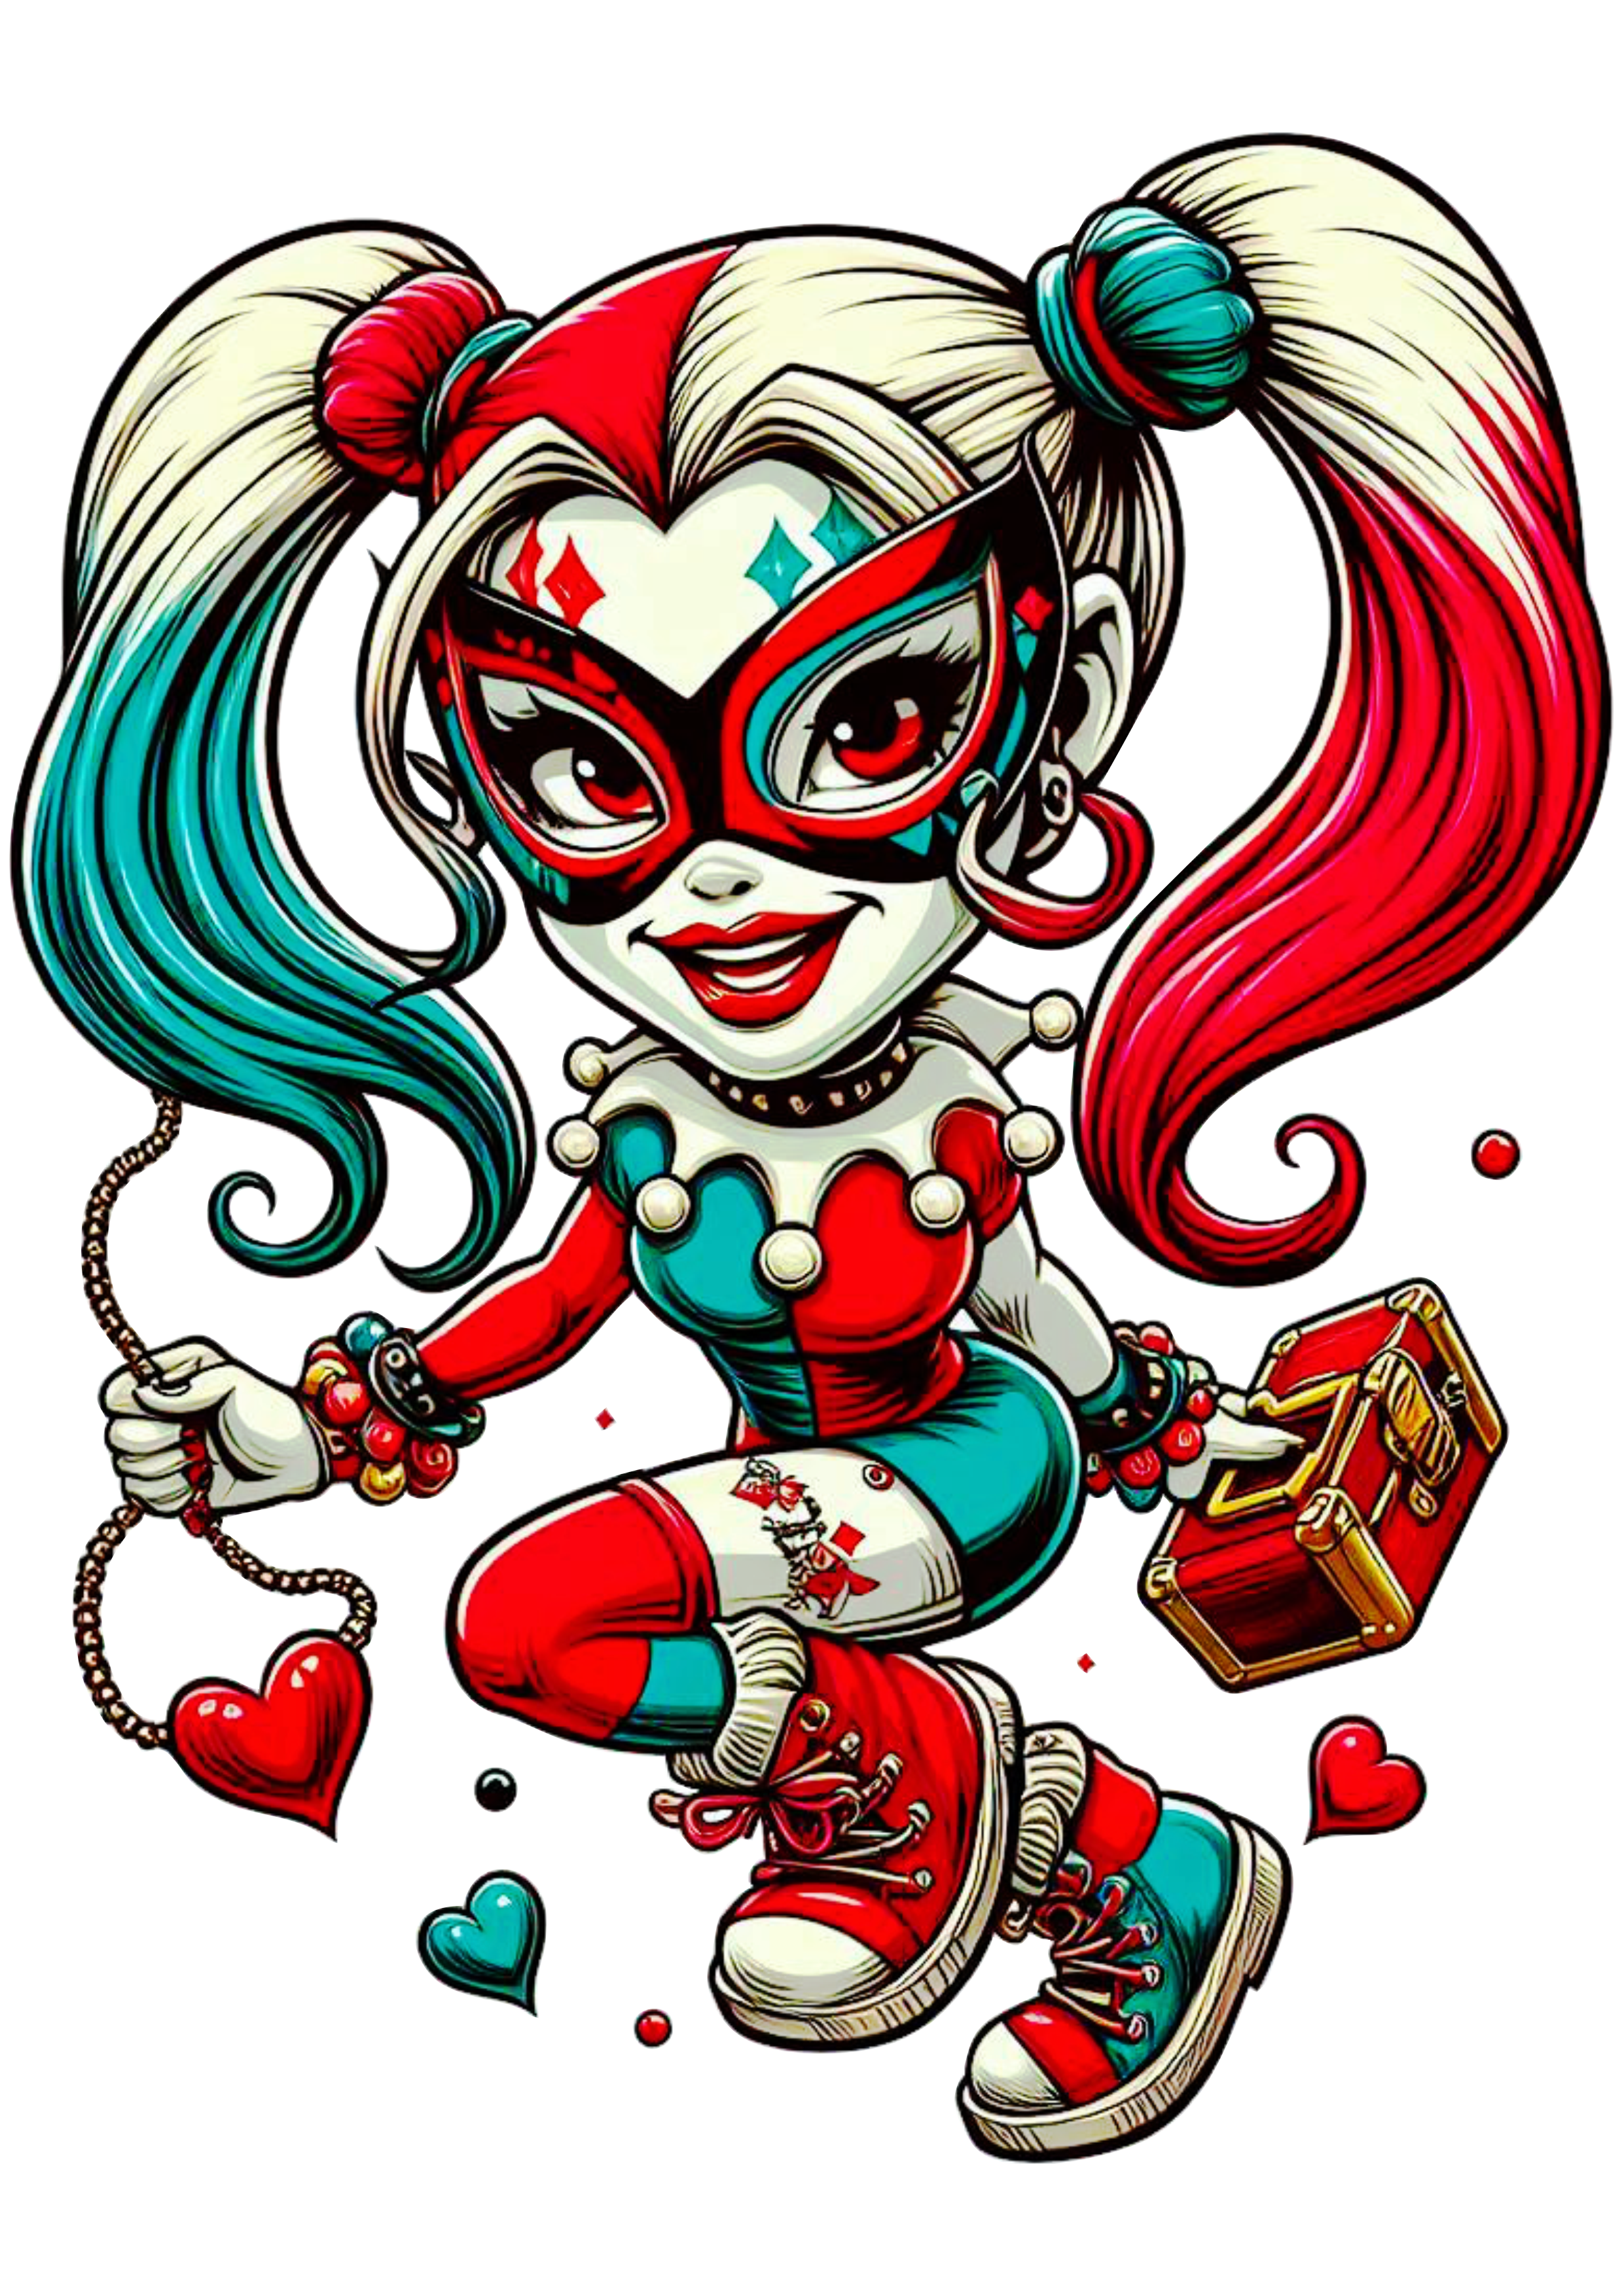 Arlequina Harley Quinn fantasia de carnaval png imagem desenho